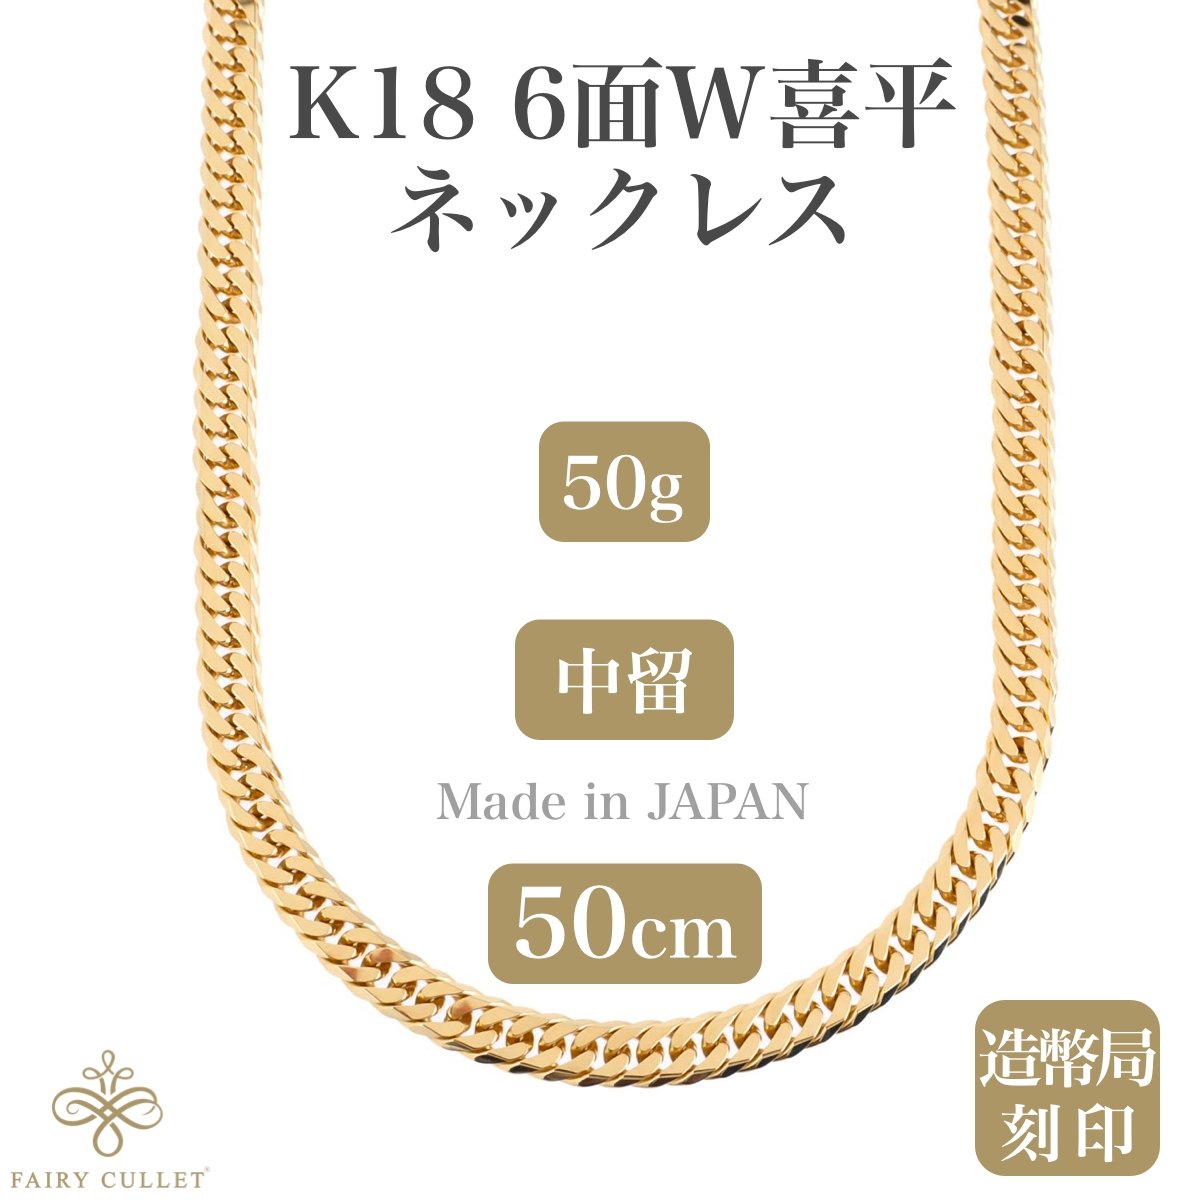 18金ネックレス K18 6面W喜平チェーン 日本製 検定印 50g 50cm 中留め 